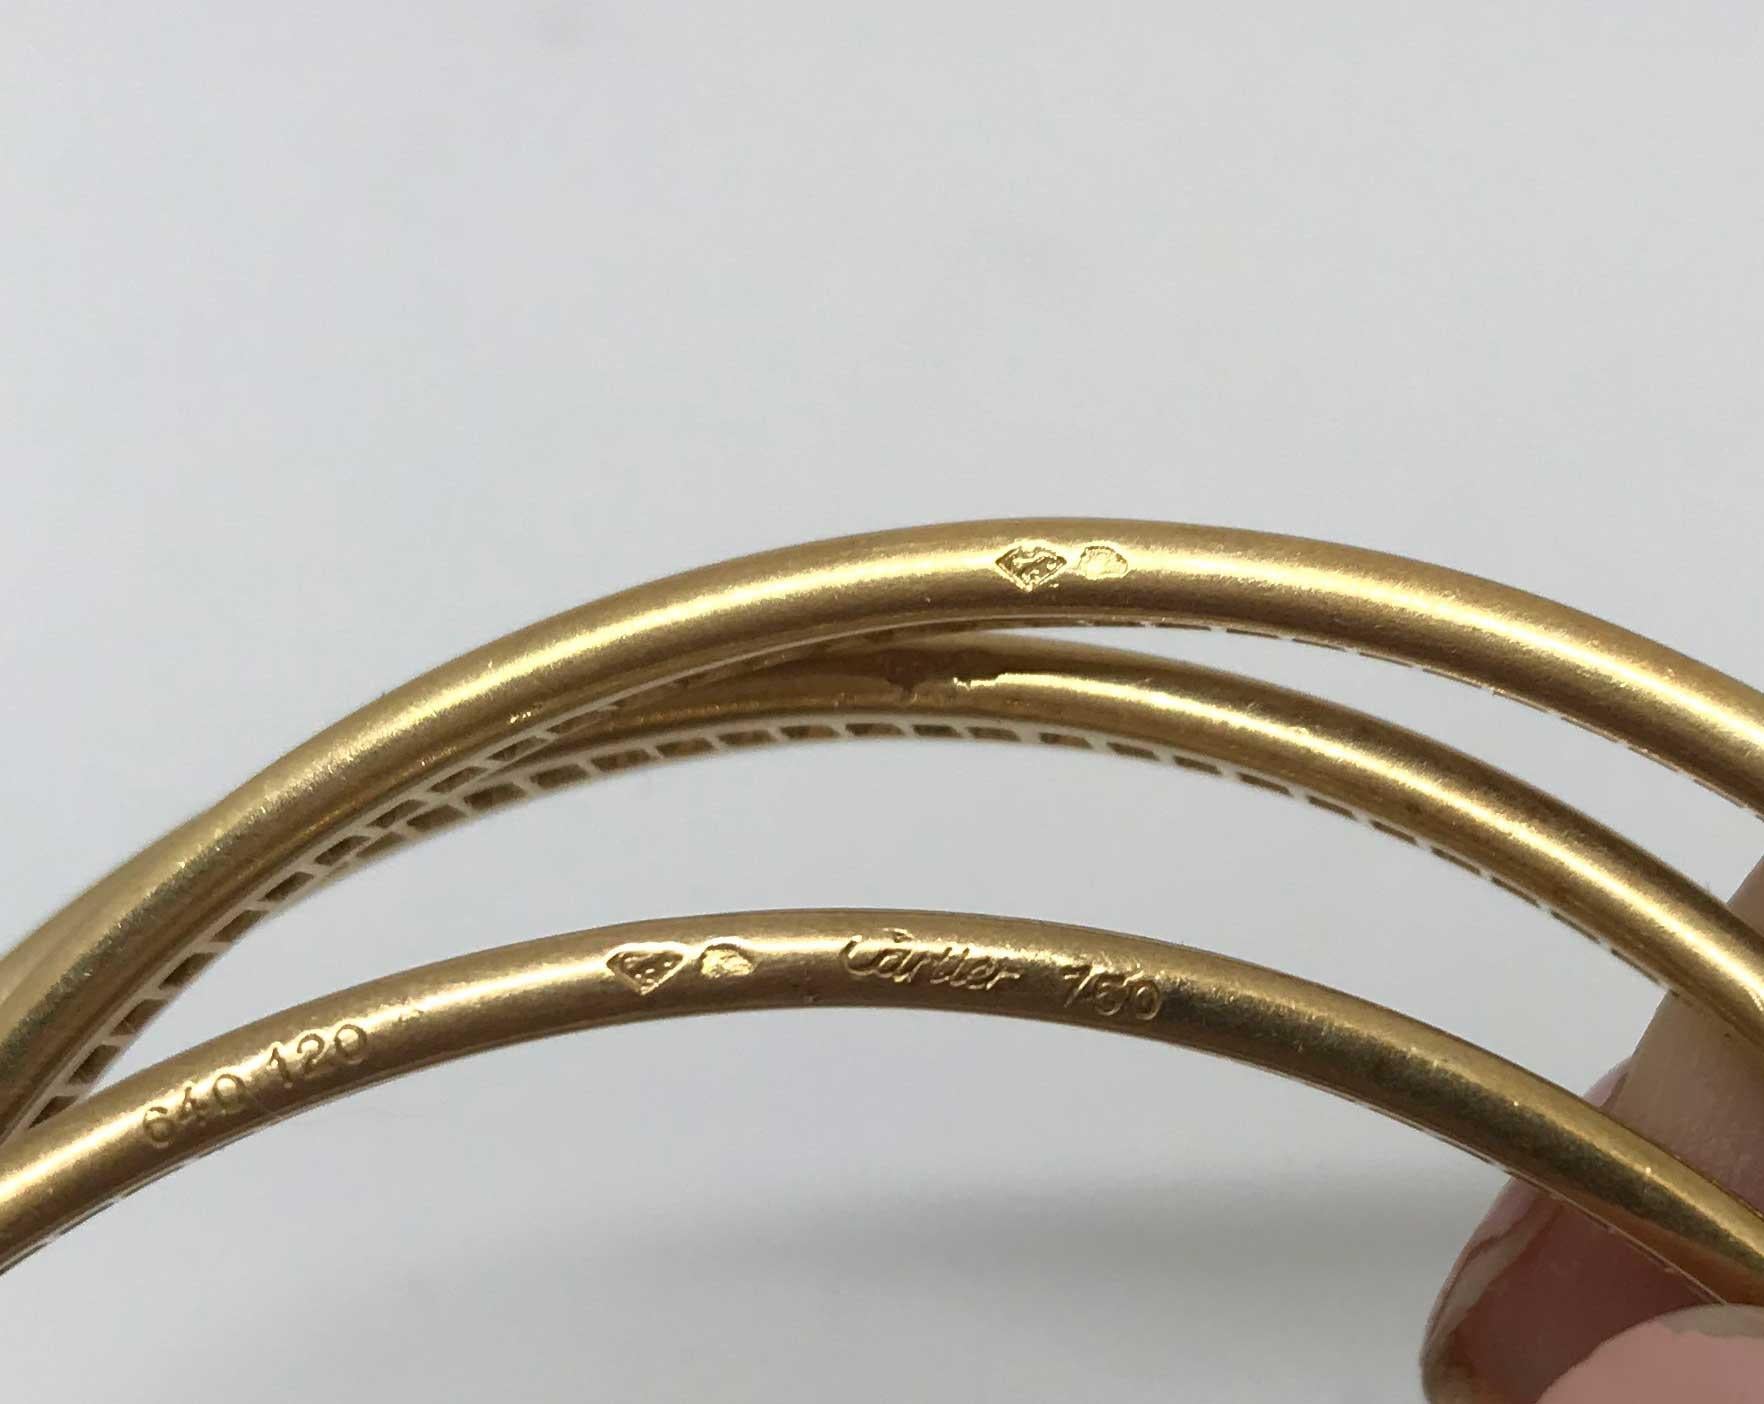 used gold bracelets for sale